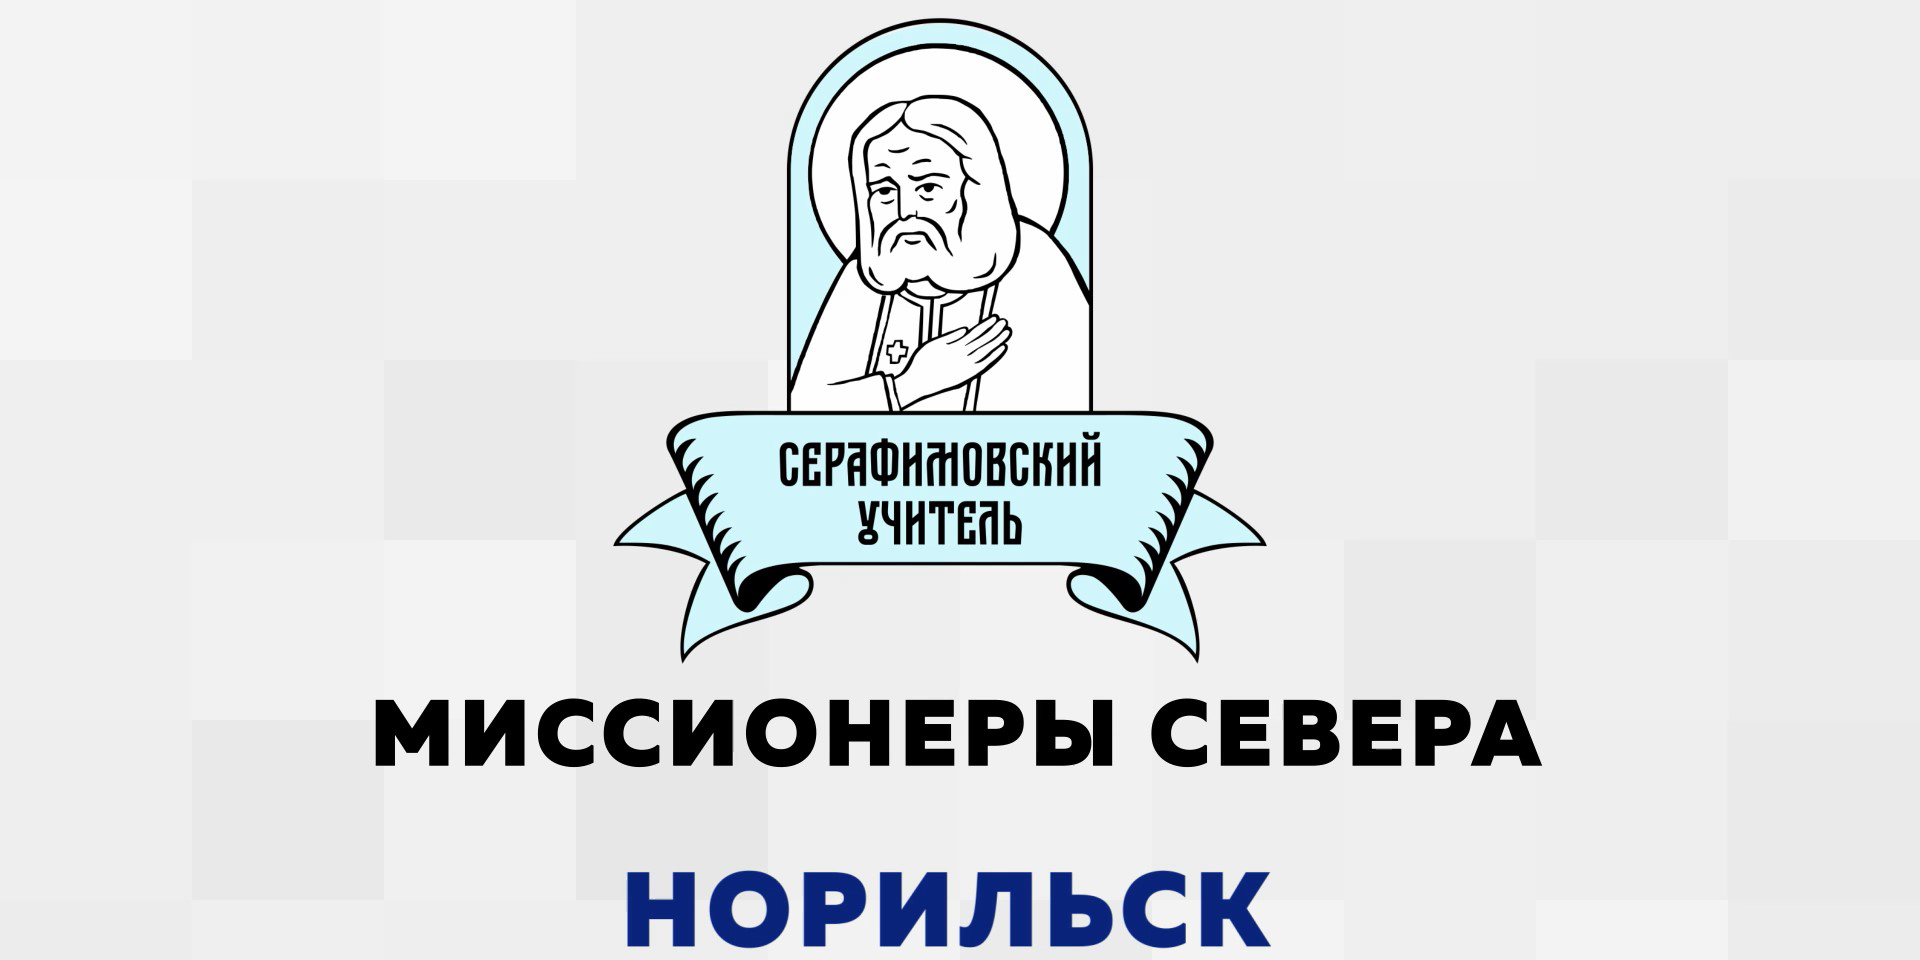 Серафимовский учитель. Миссионеры Севера. Норильск 